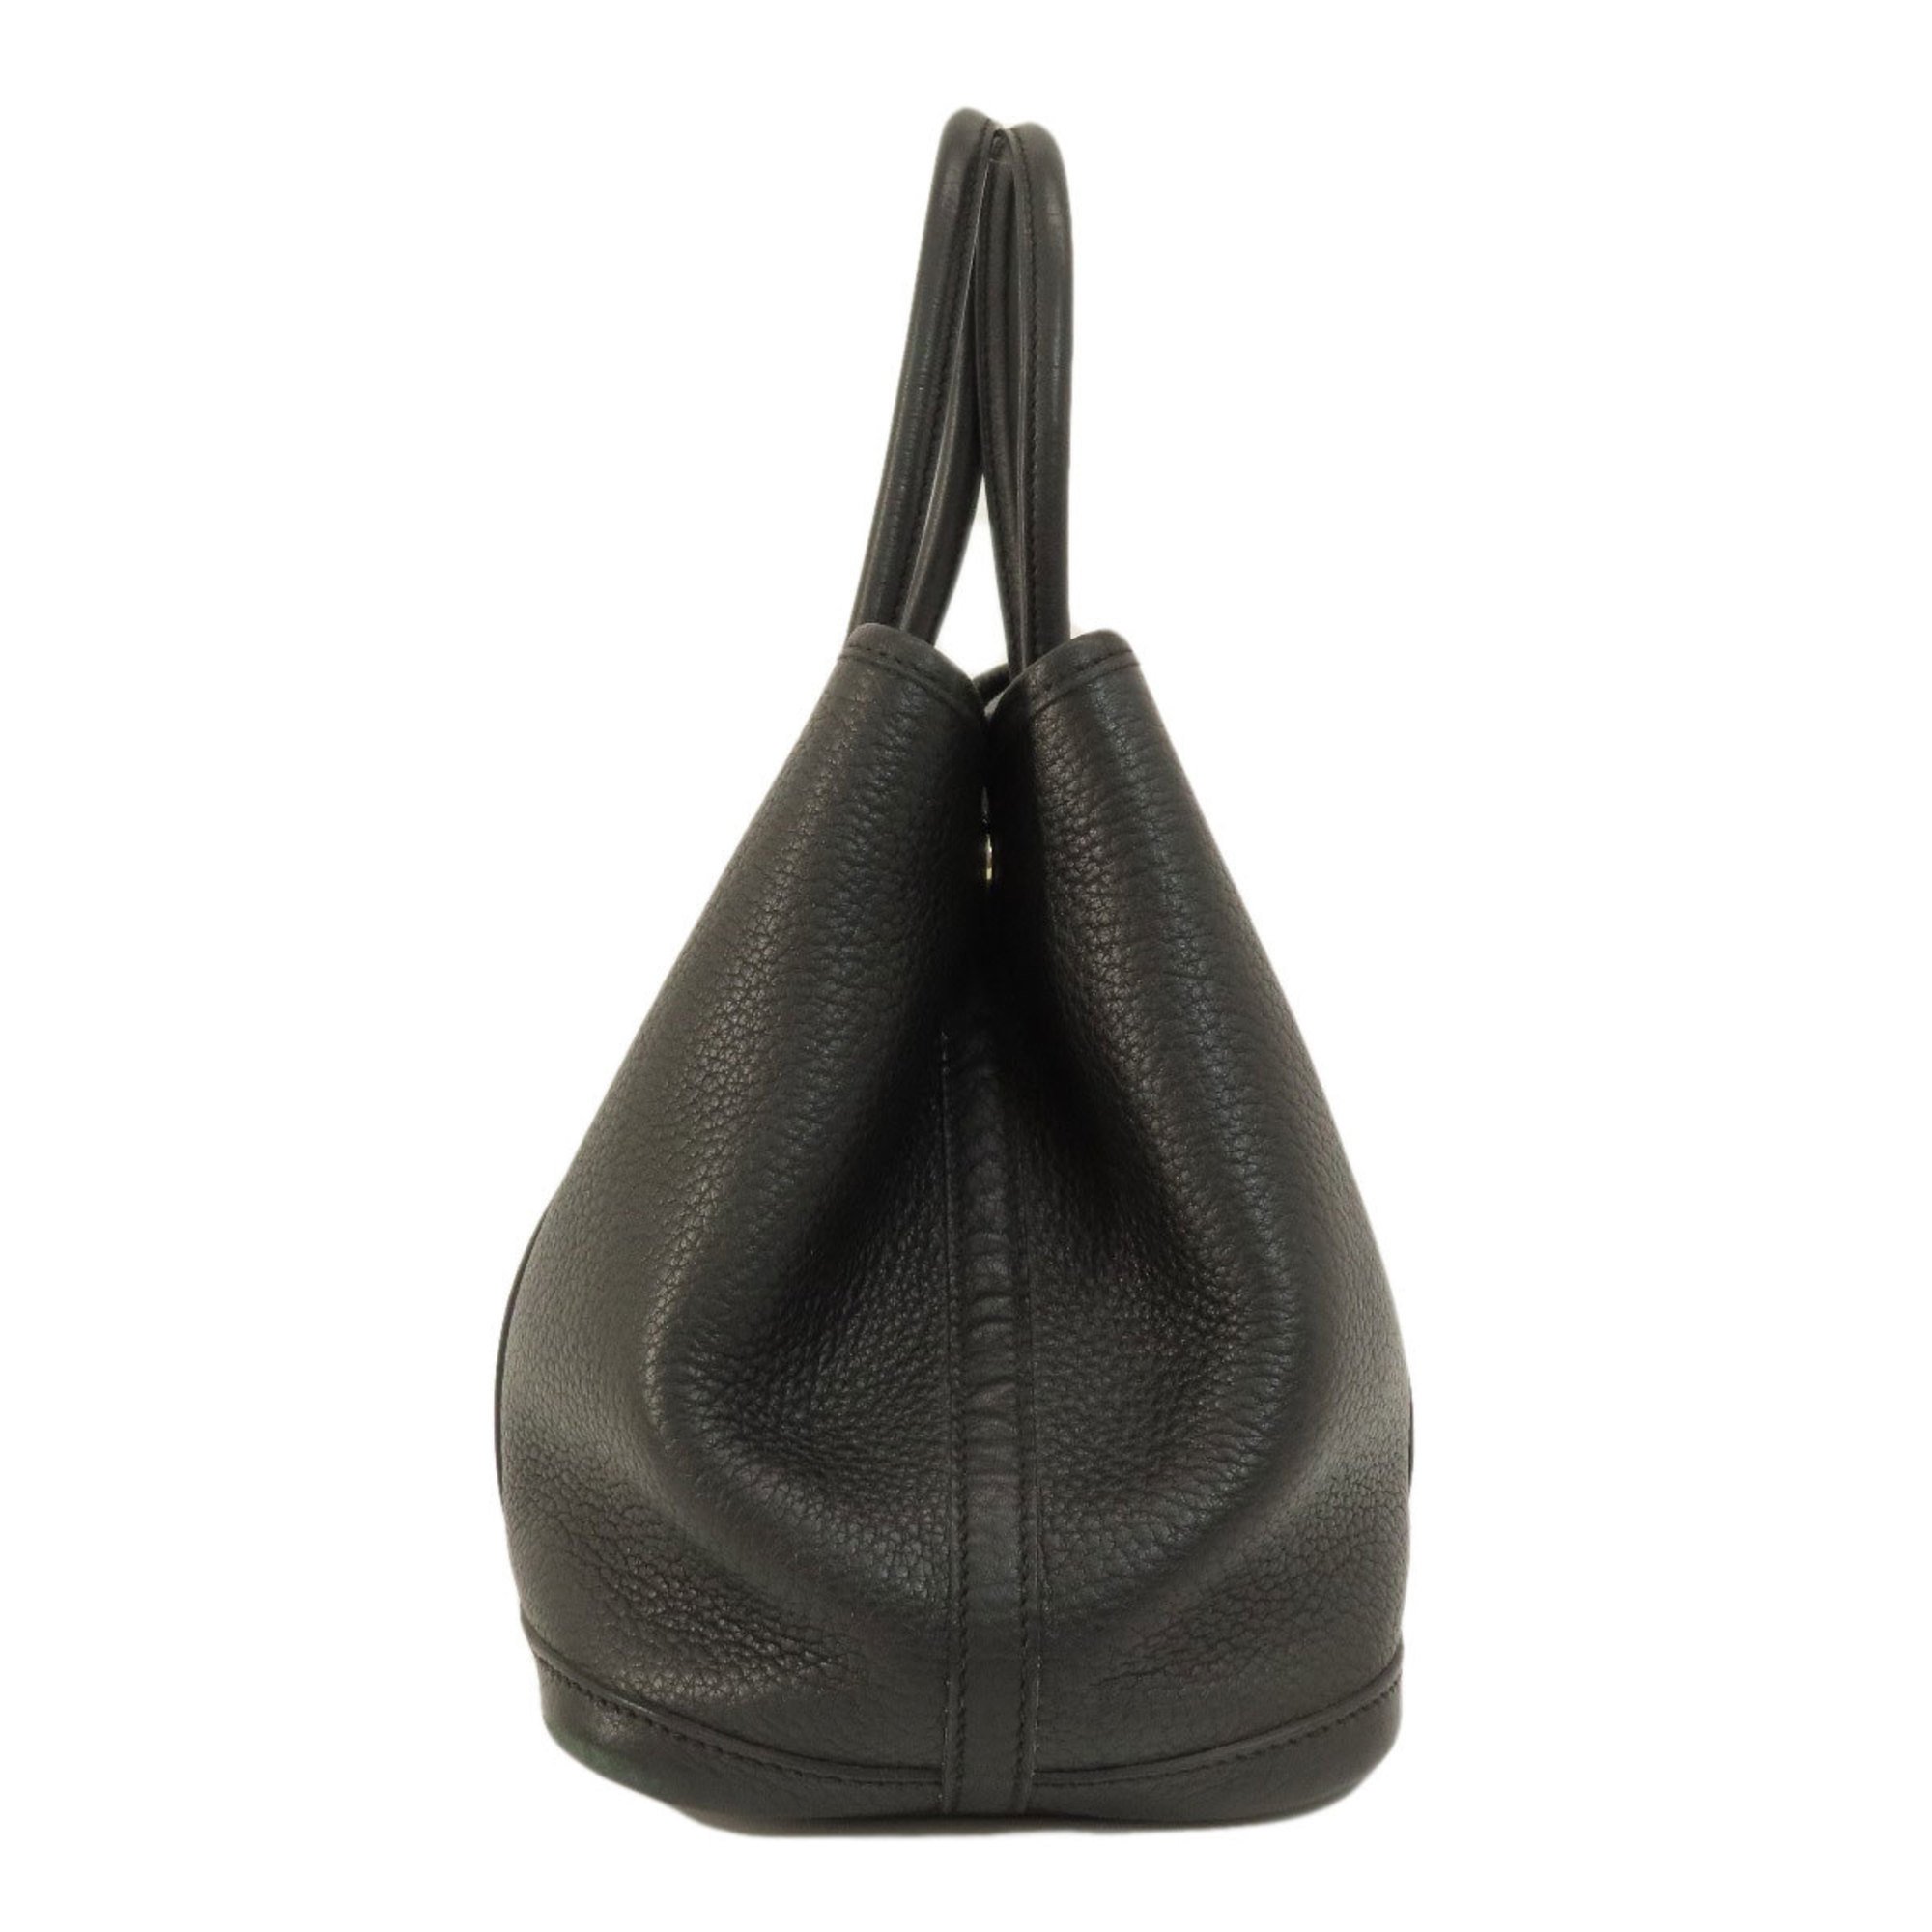 Hermes Garden TPM Black Negonda Handbag for Women